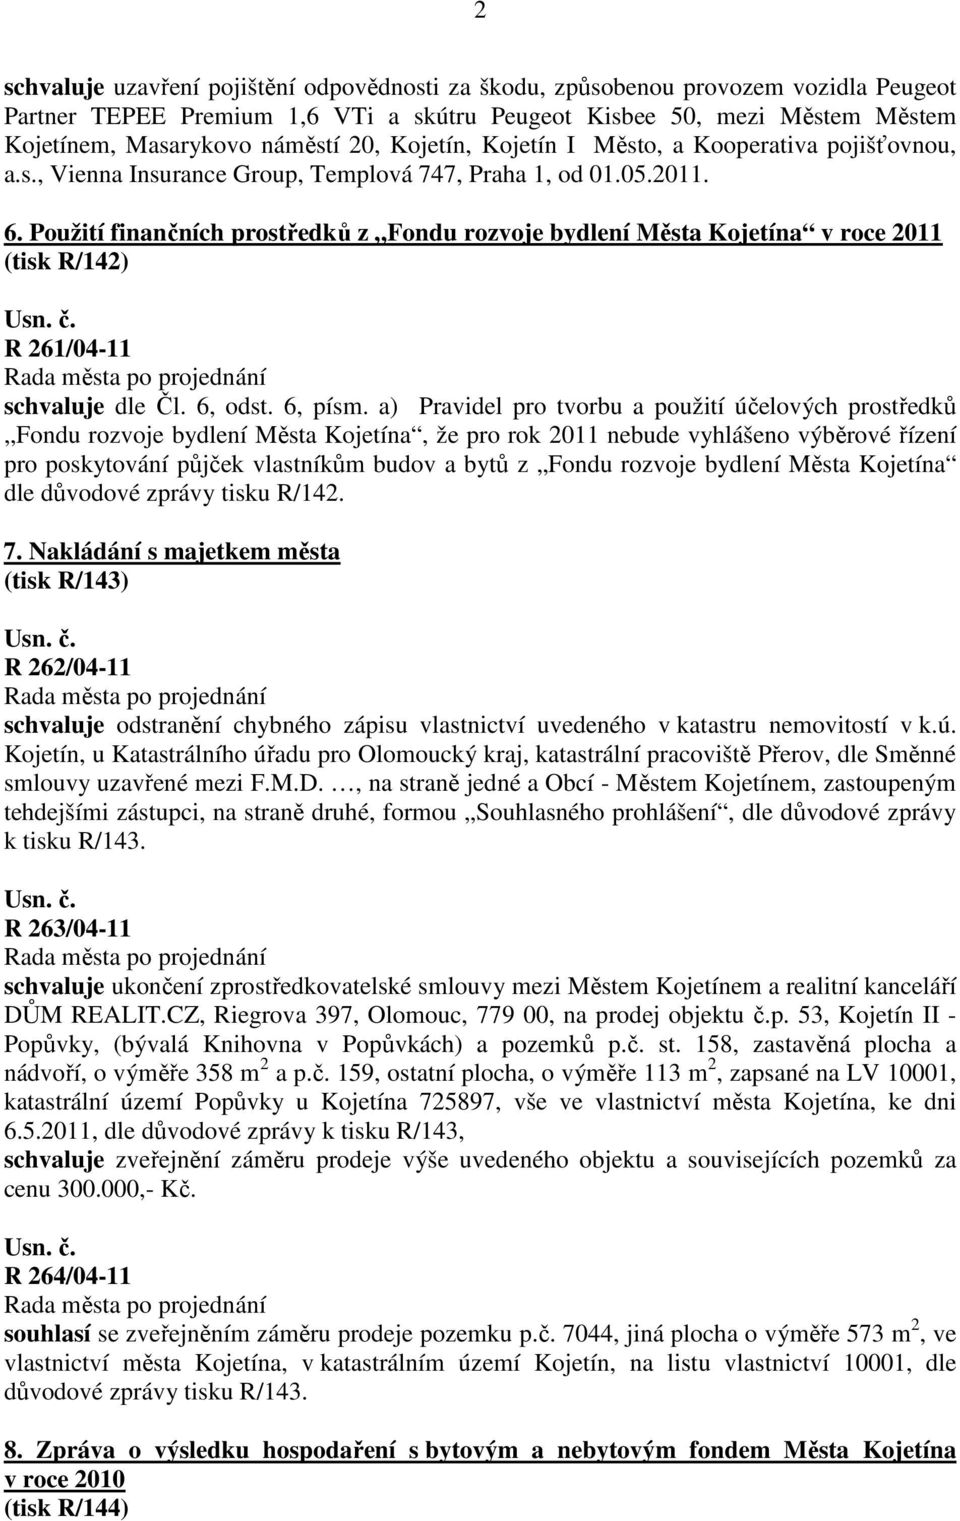 Použití finančních prostředků z Fondu rozvoje bydlení Města Kojetína v roce 2011 (tisk R/142) R 261/04-11 schvaluje dle Čl. 6, odst. 6, písm.